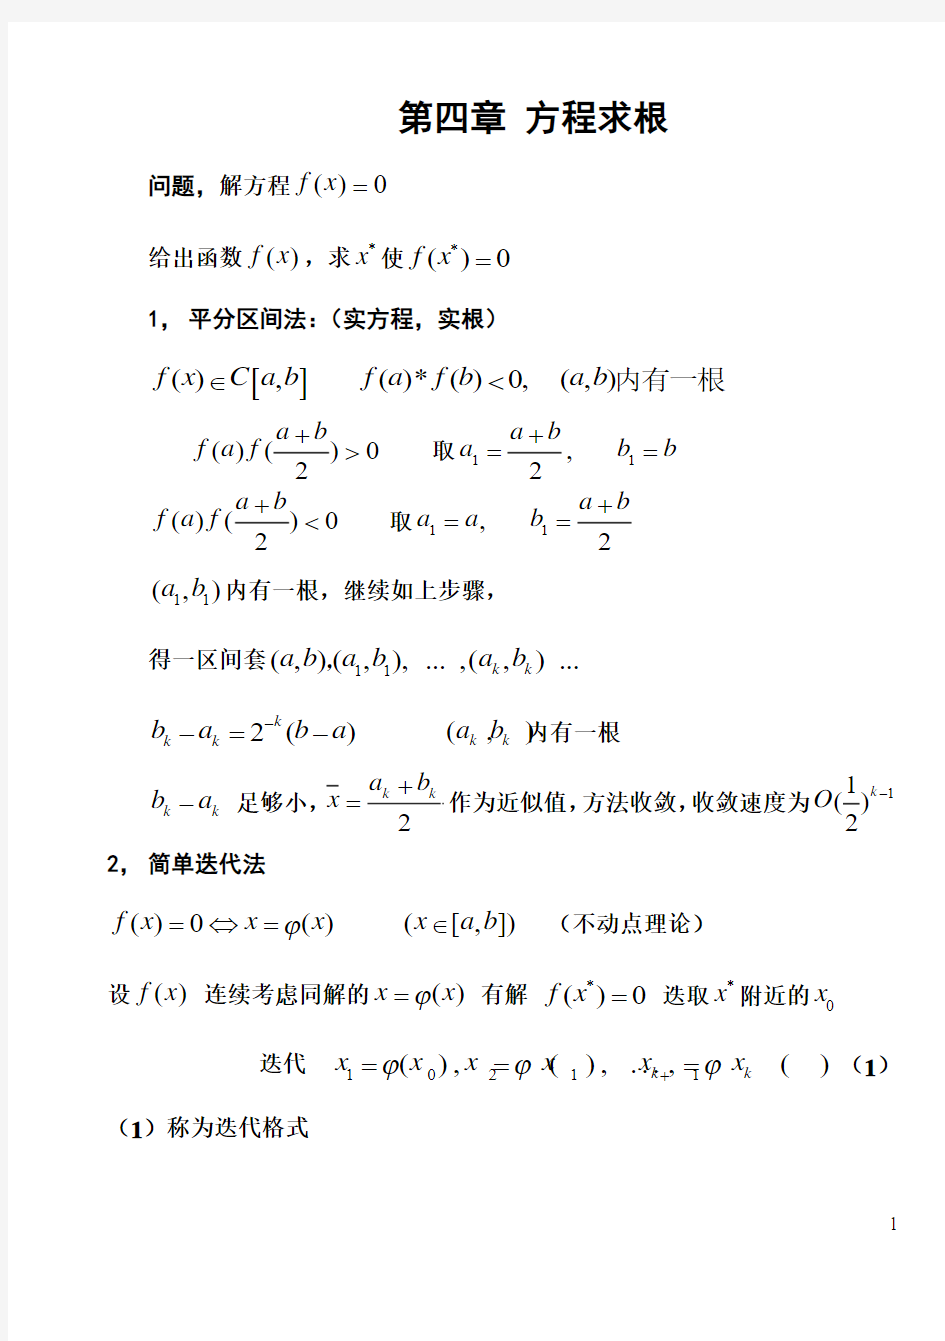 上海交通大学计算方法课件(宋宝瑞)CH.6